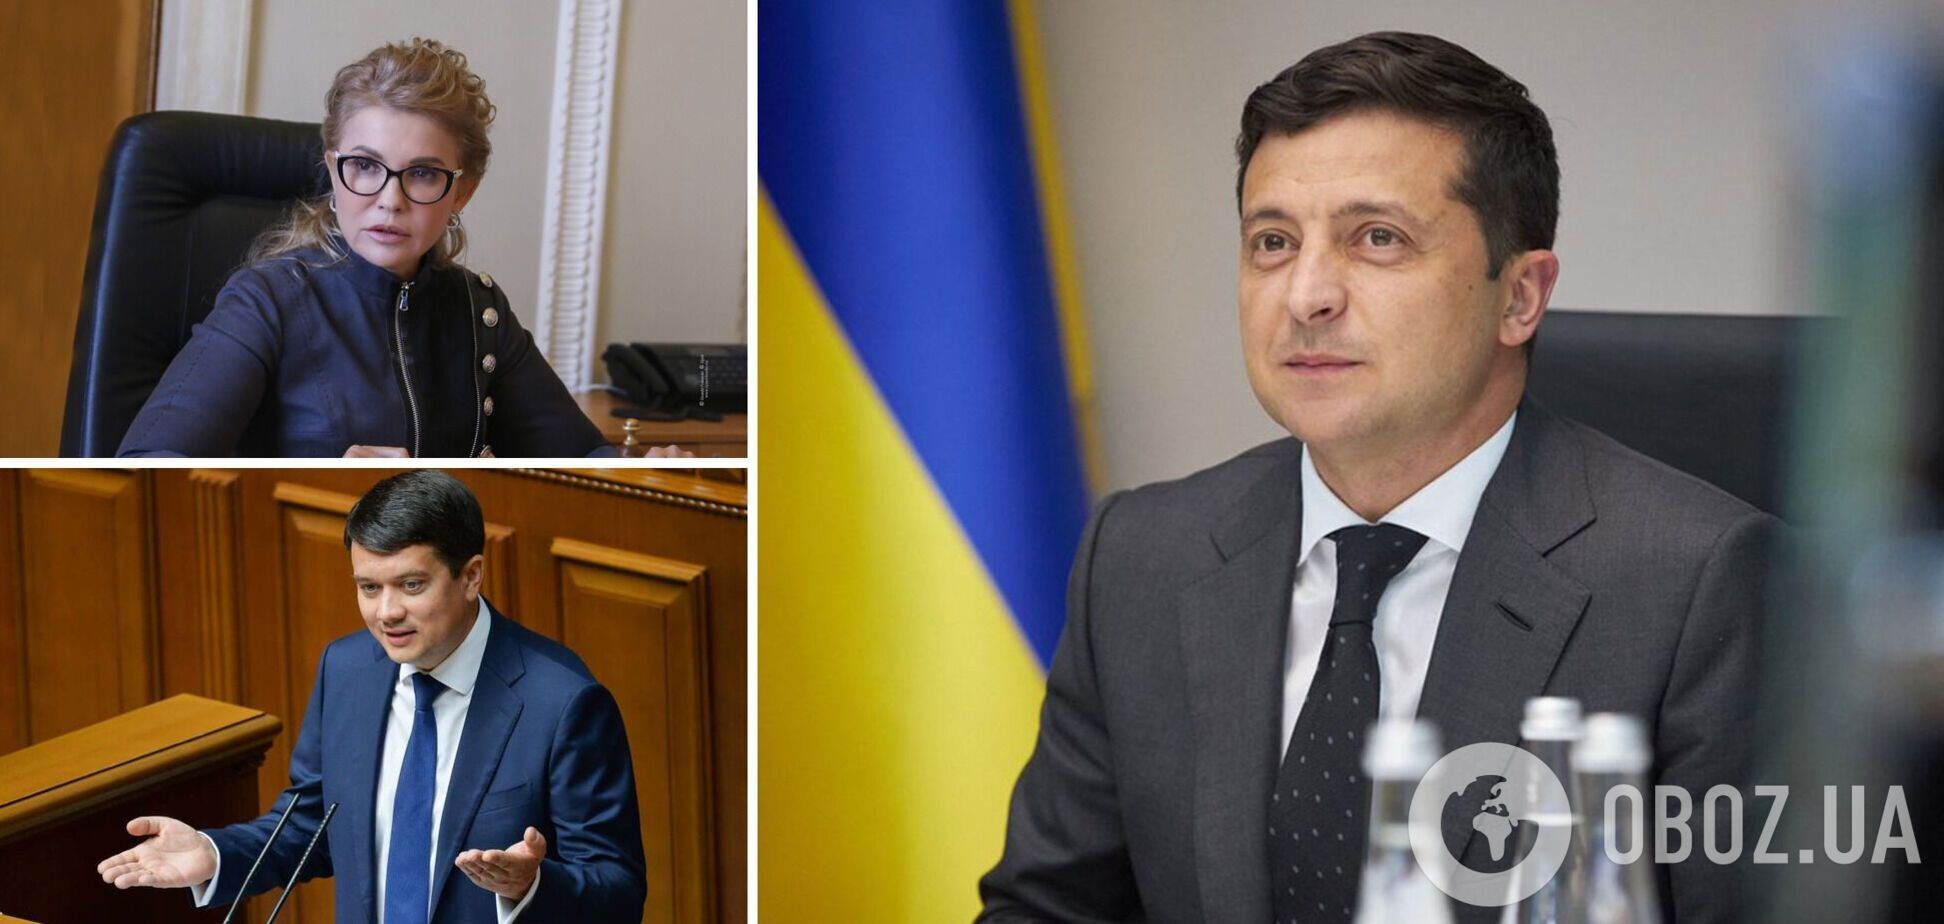 Зеленский, Разумков, Тимошенко – лидеры доверия среди украинцев – опрос 'Рейтинга'